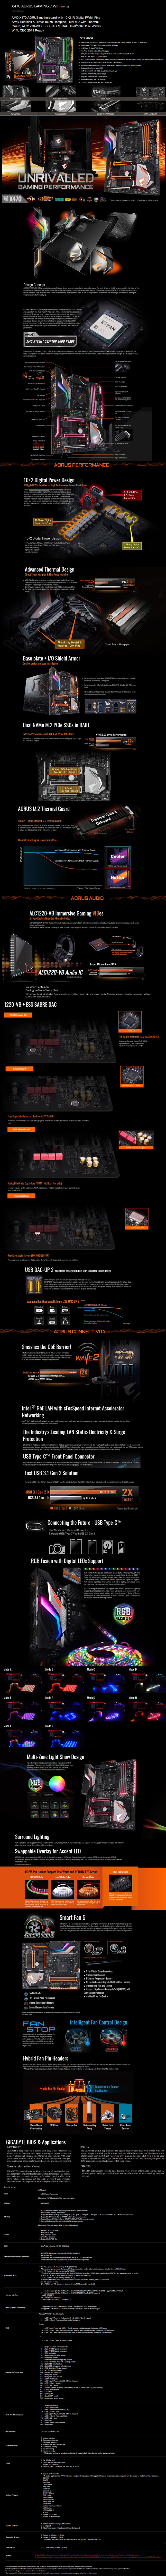 Buy Online Gigabyte X470 Aorus Gaming 7 WIFI AMD AM4 Socket Motherboard